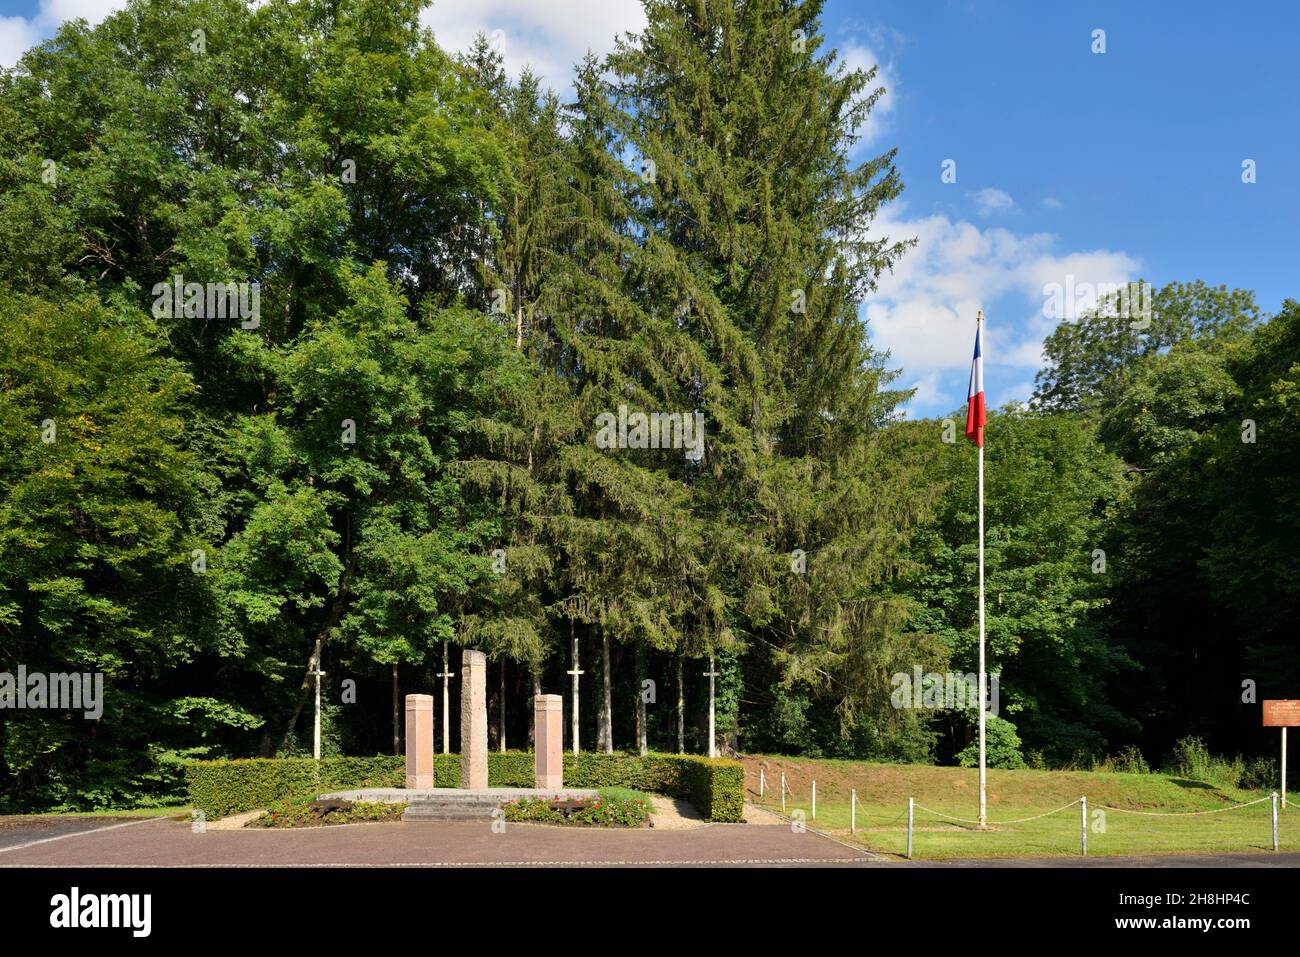 Francia, Meurthe-et-Moselle (54), Champigneulles, lugar llamado La Malpierre, monumento en memoria de los 63 combatientes de la resistencia fusilados entre 1941 y 1944 por los ocupantes alemanes en el claro de La Malpierre Foto de stock